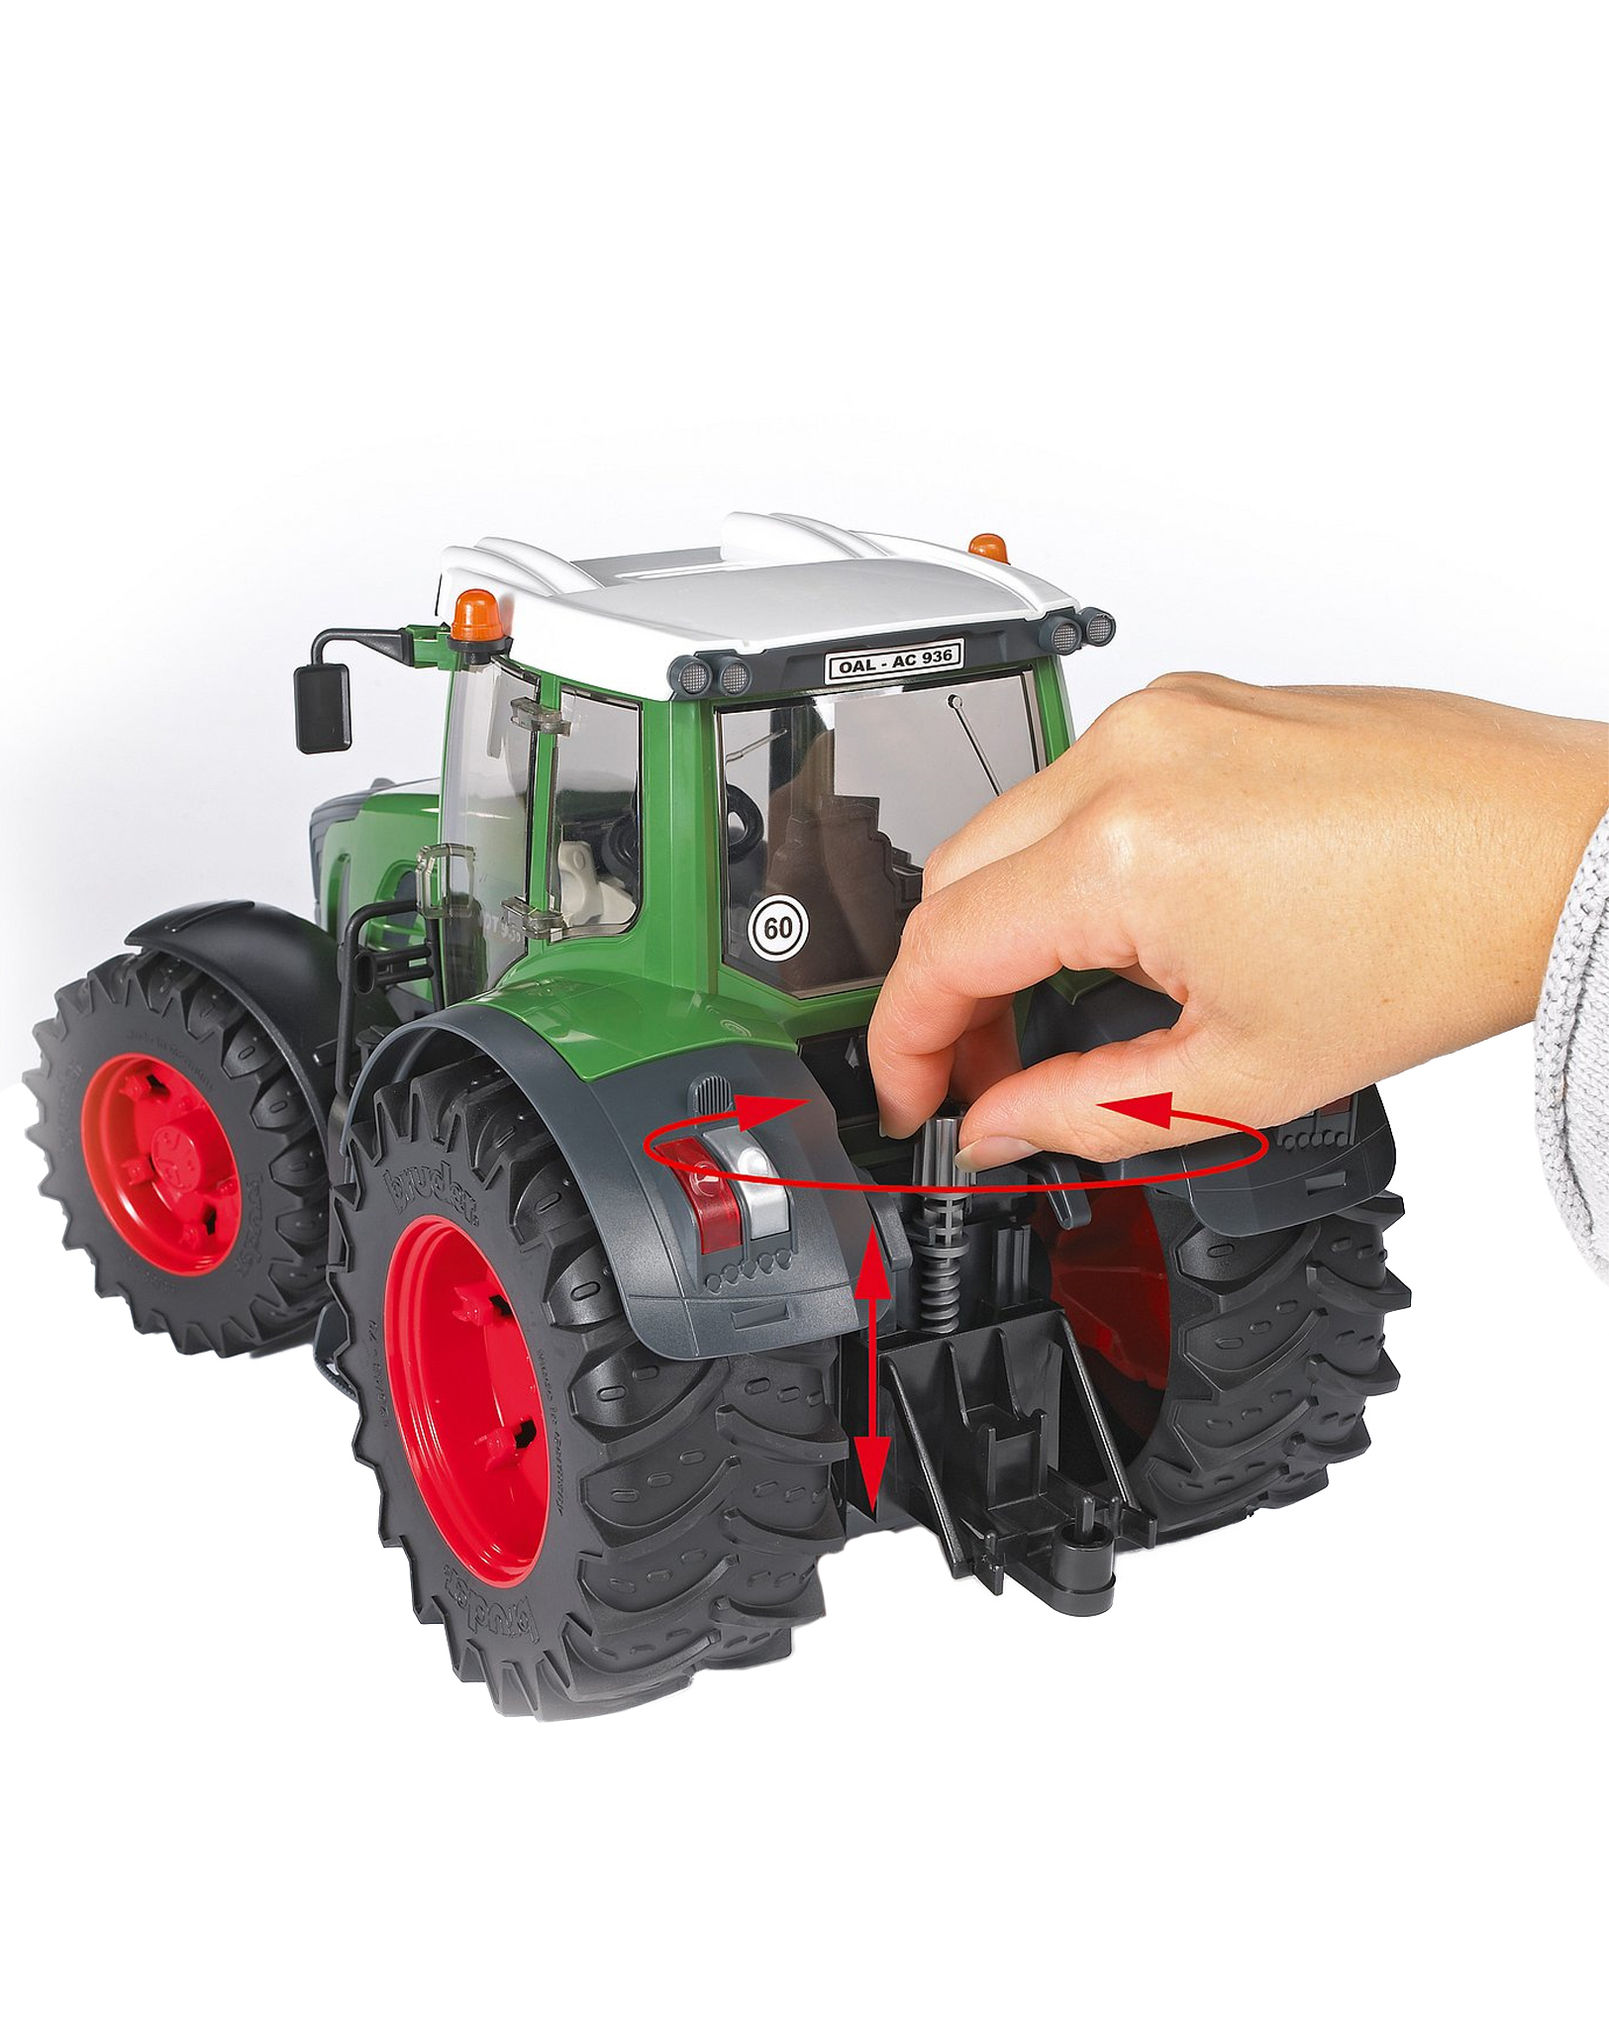 https://i.weltbild.de/p/bruder-3040-fendt-traktor-936-vario-modellfahrzeug-337099842.jpg?v=2&wp=_max